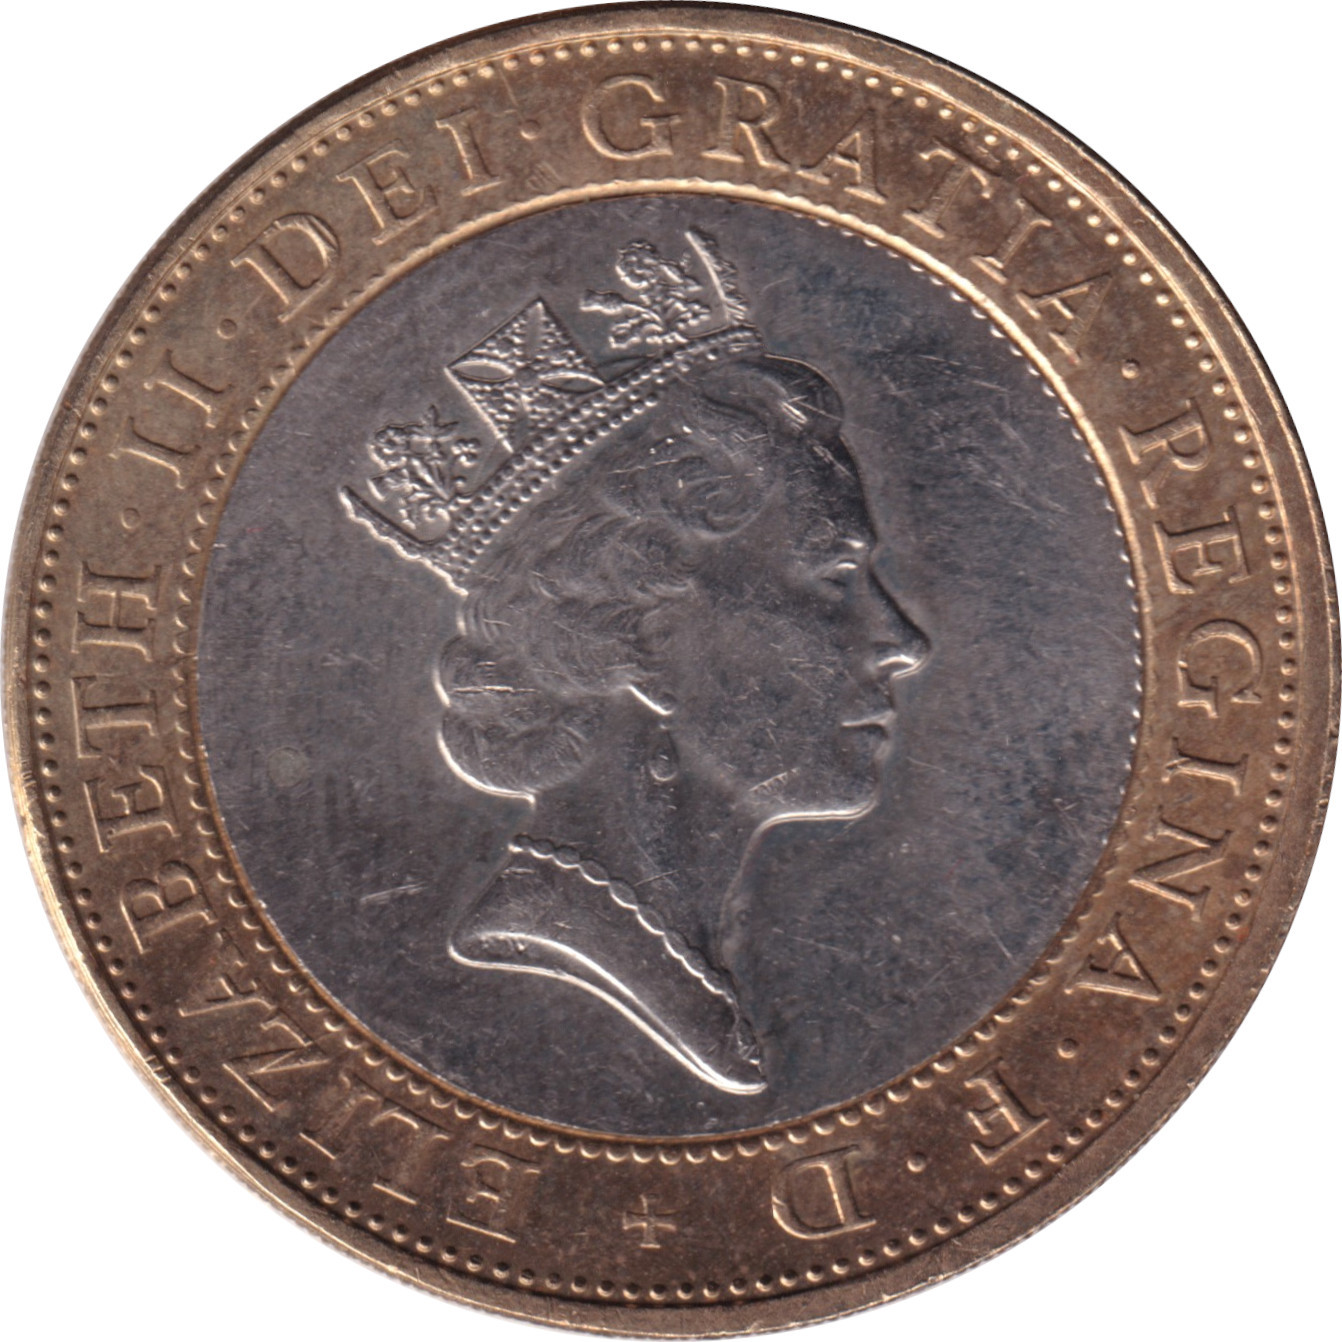 2 pound - Elizabeth II - Tête mature